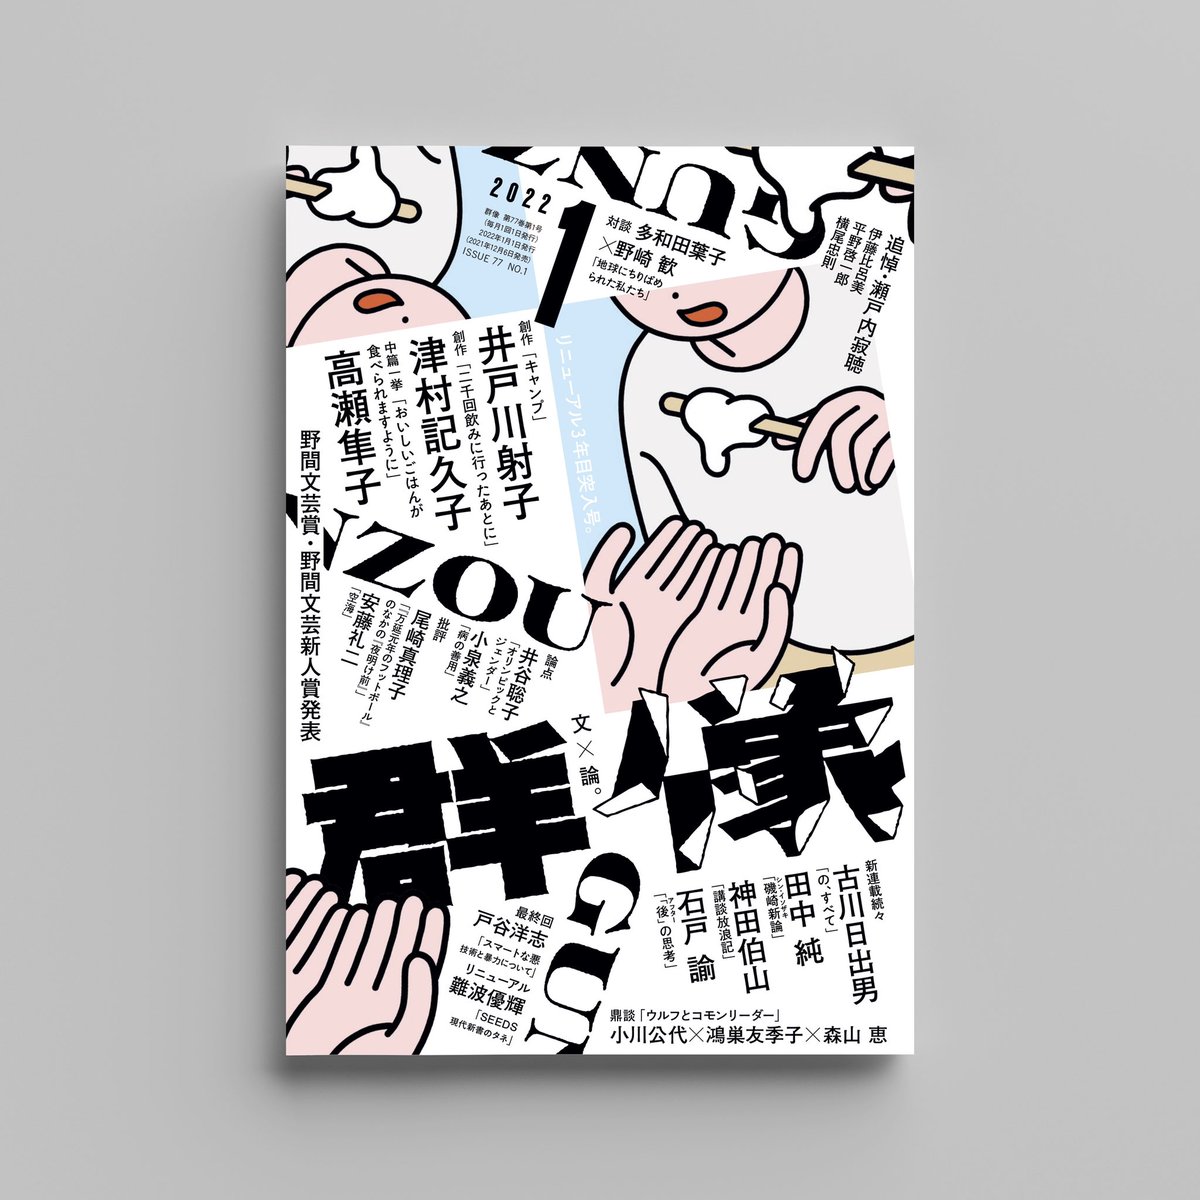 【お仕事】
「群像」2022年1月号の表紙・扉でイラストを使用していただきました!
憧れの群像…レイアウトの奥行き感がかっこよすぎるので書店で見かけたらぜひ手に取ってご覧ください📖👀
リニューアル3年目だそうです🎊

AD : 川名潤さん @kawana_jun 
ロゴデザイン : 鈴木哲生さん @TezzoSUZUKI 